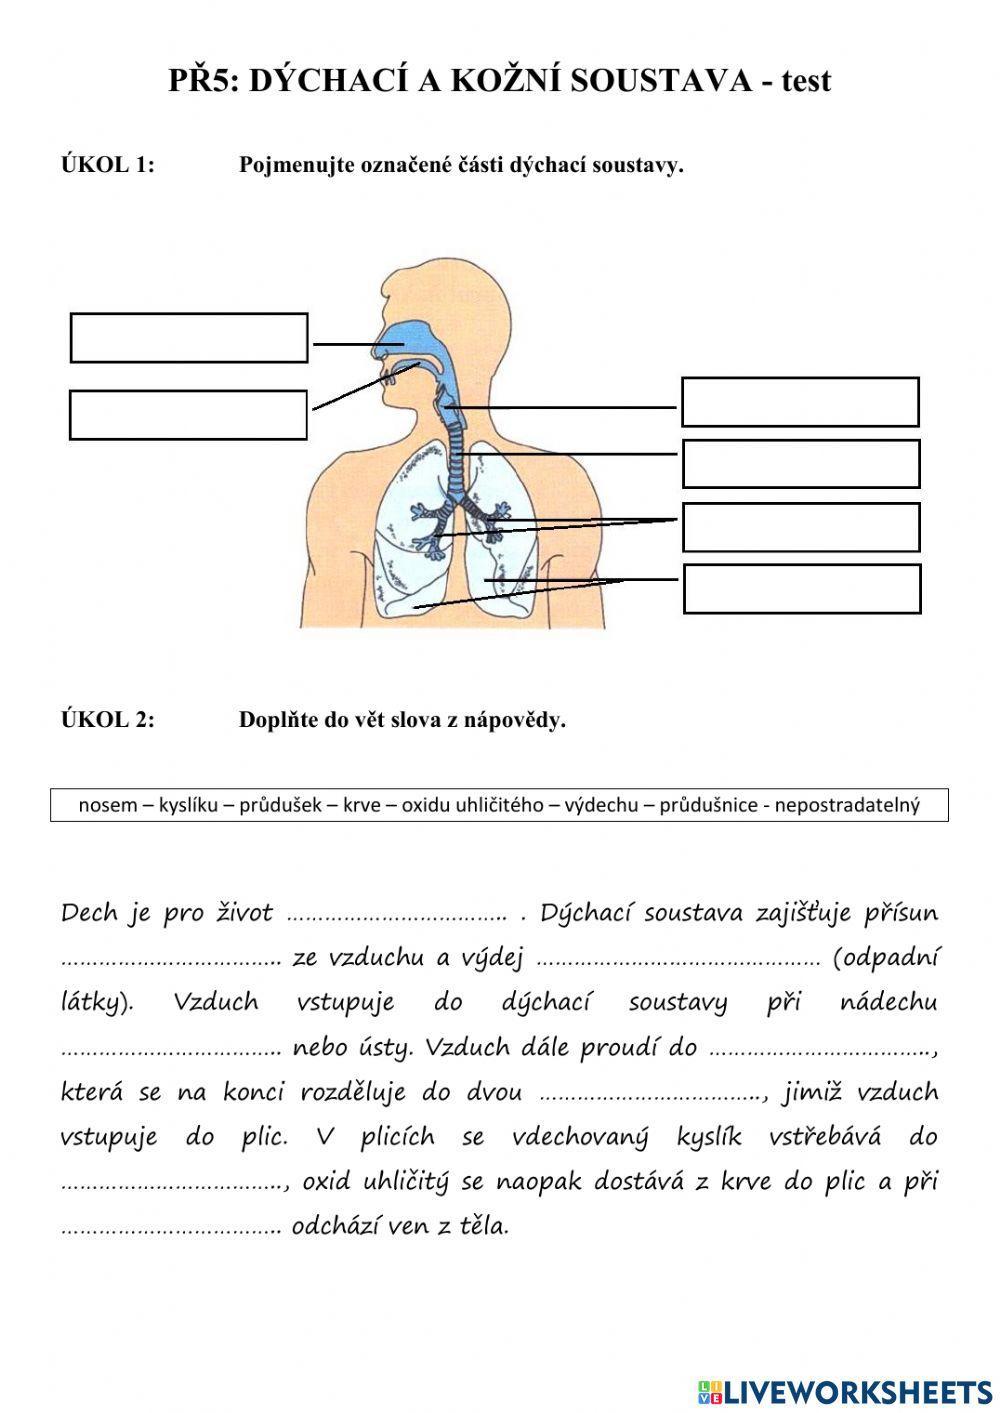 PŘ5 - dýchací a kožní soustava (test)